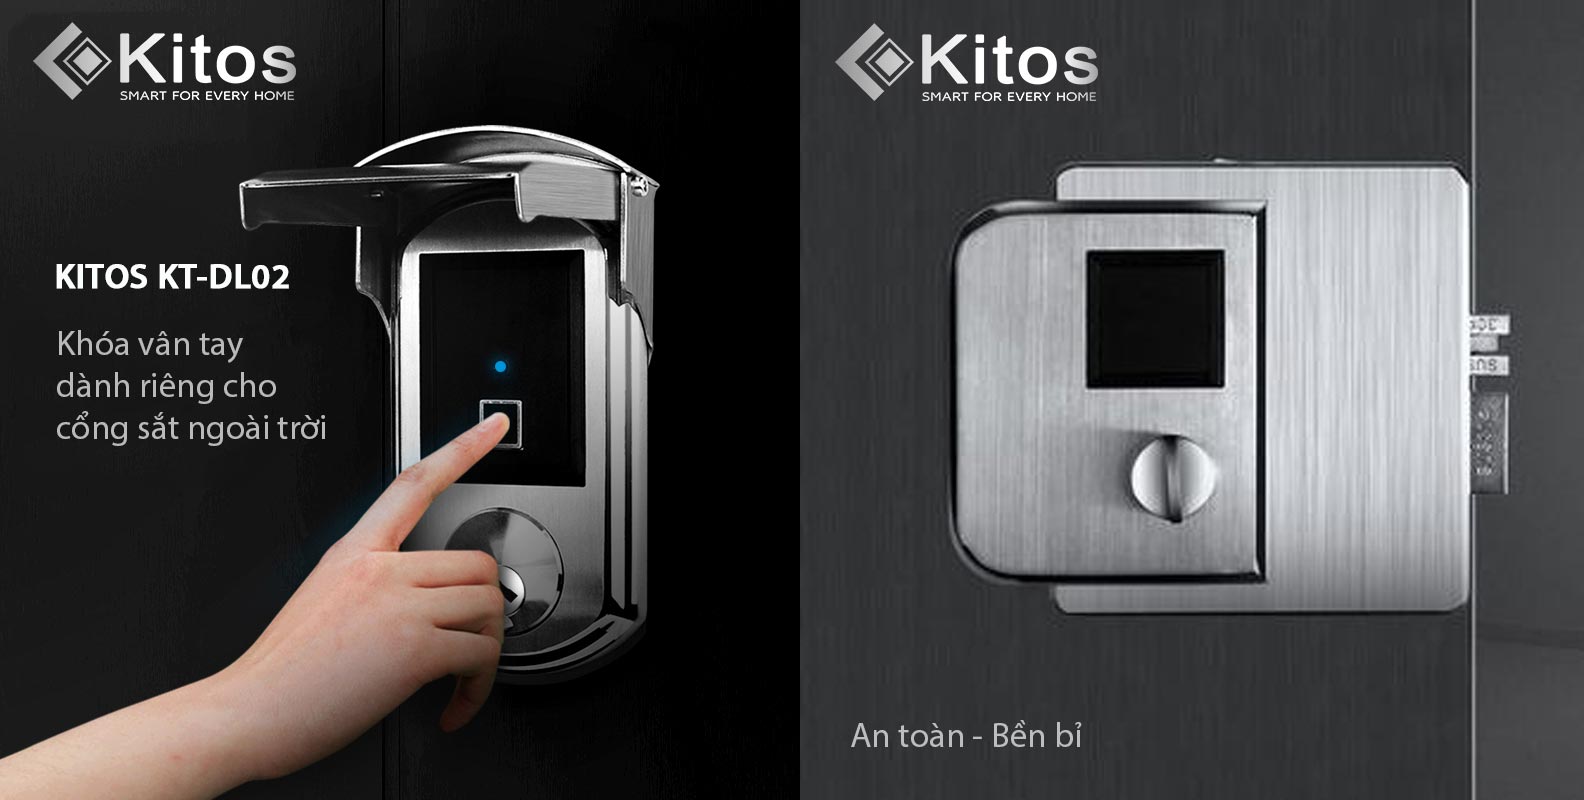 Khóa vân tay Kitos KT-DL02 ngoài trời là sự lựa chọn hàng đầu của nhiều khách hàng. Với tính năng bảo mật vượt trội, sản phẩm sẽ đảm bảo an toàn cho ngôi nhà hoặc công ty của bạn. Hãy ghé thăm và xem hình ảnh để hiểu thêm về sản phẩm này.